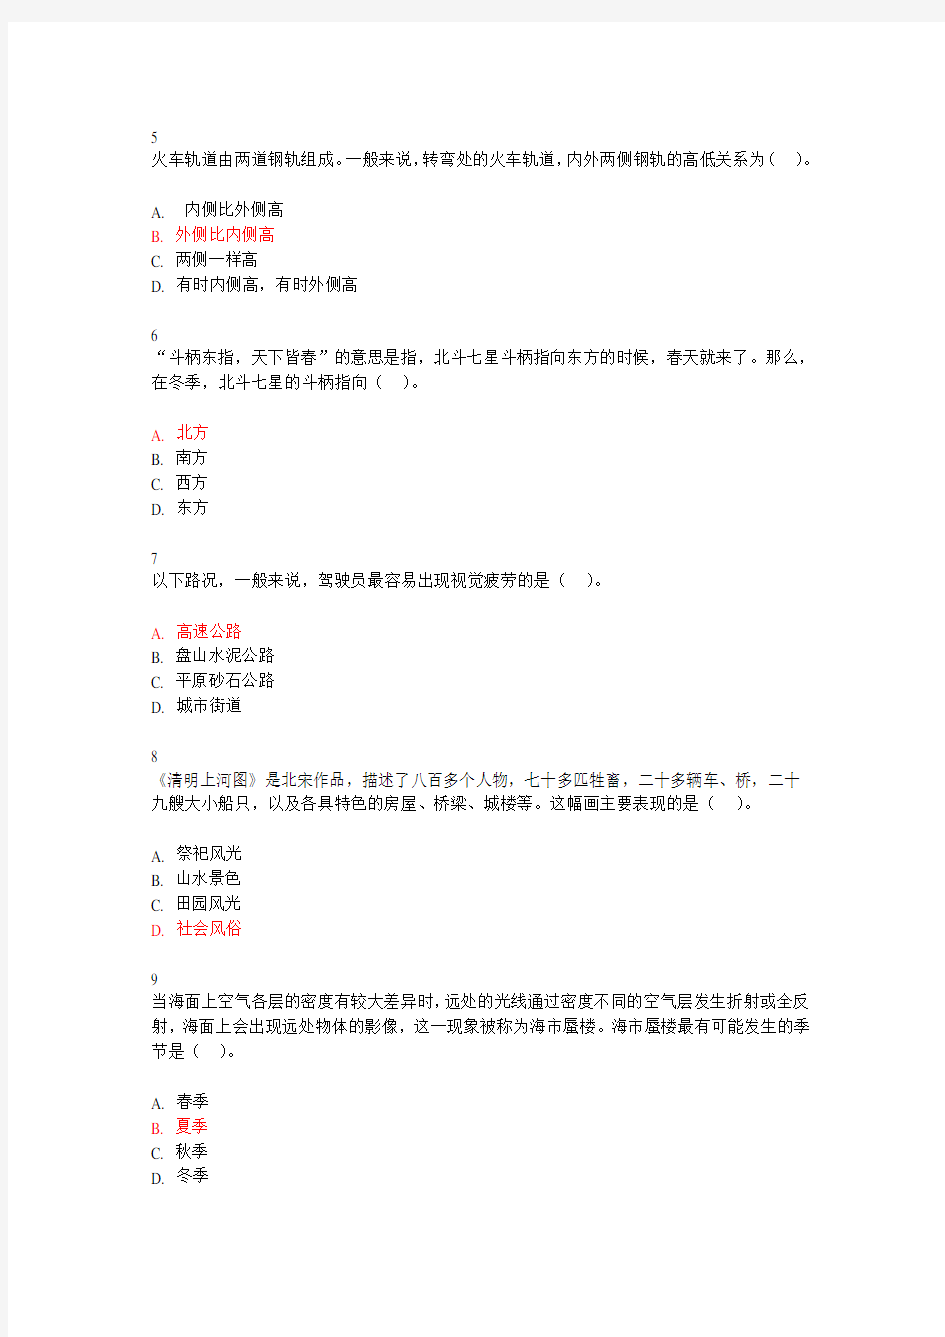 2014年广东省公务员考试行测真题及答案(100题完整版)